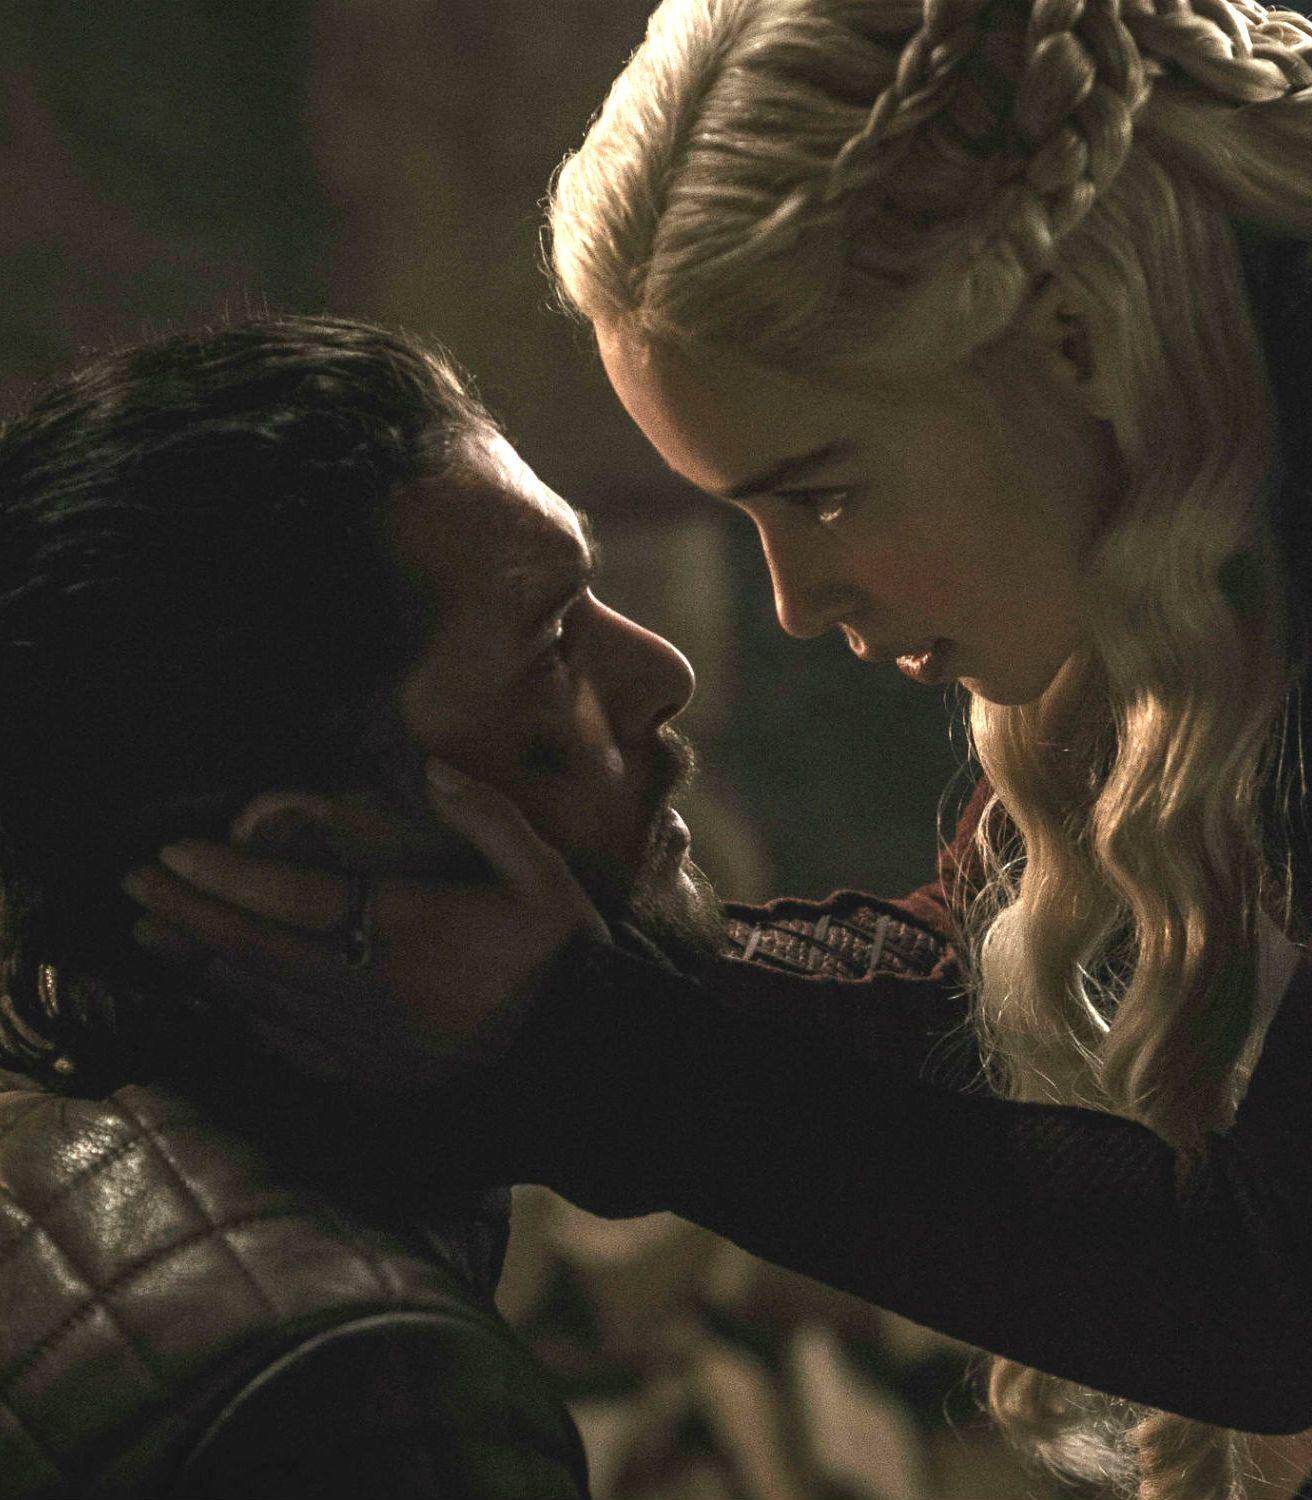 Daenerys begs Jon in Game of Thrones season 8